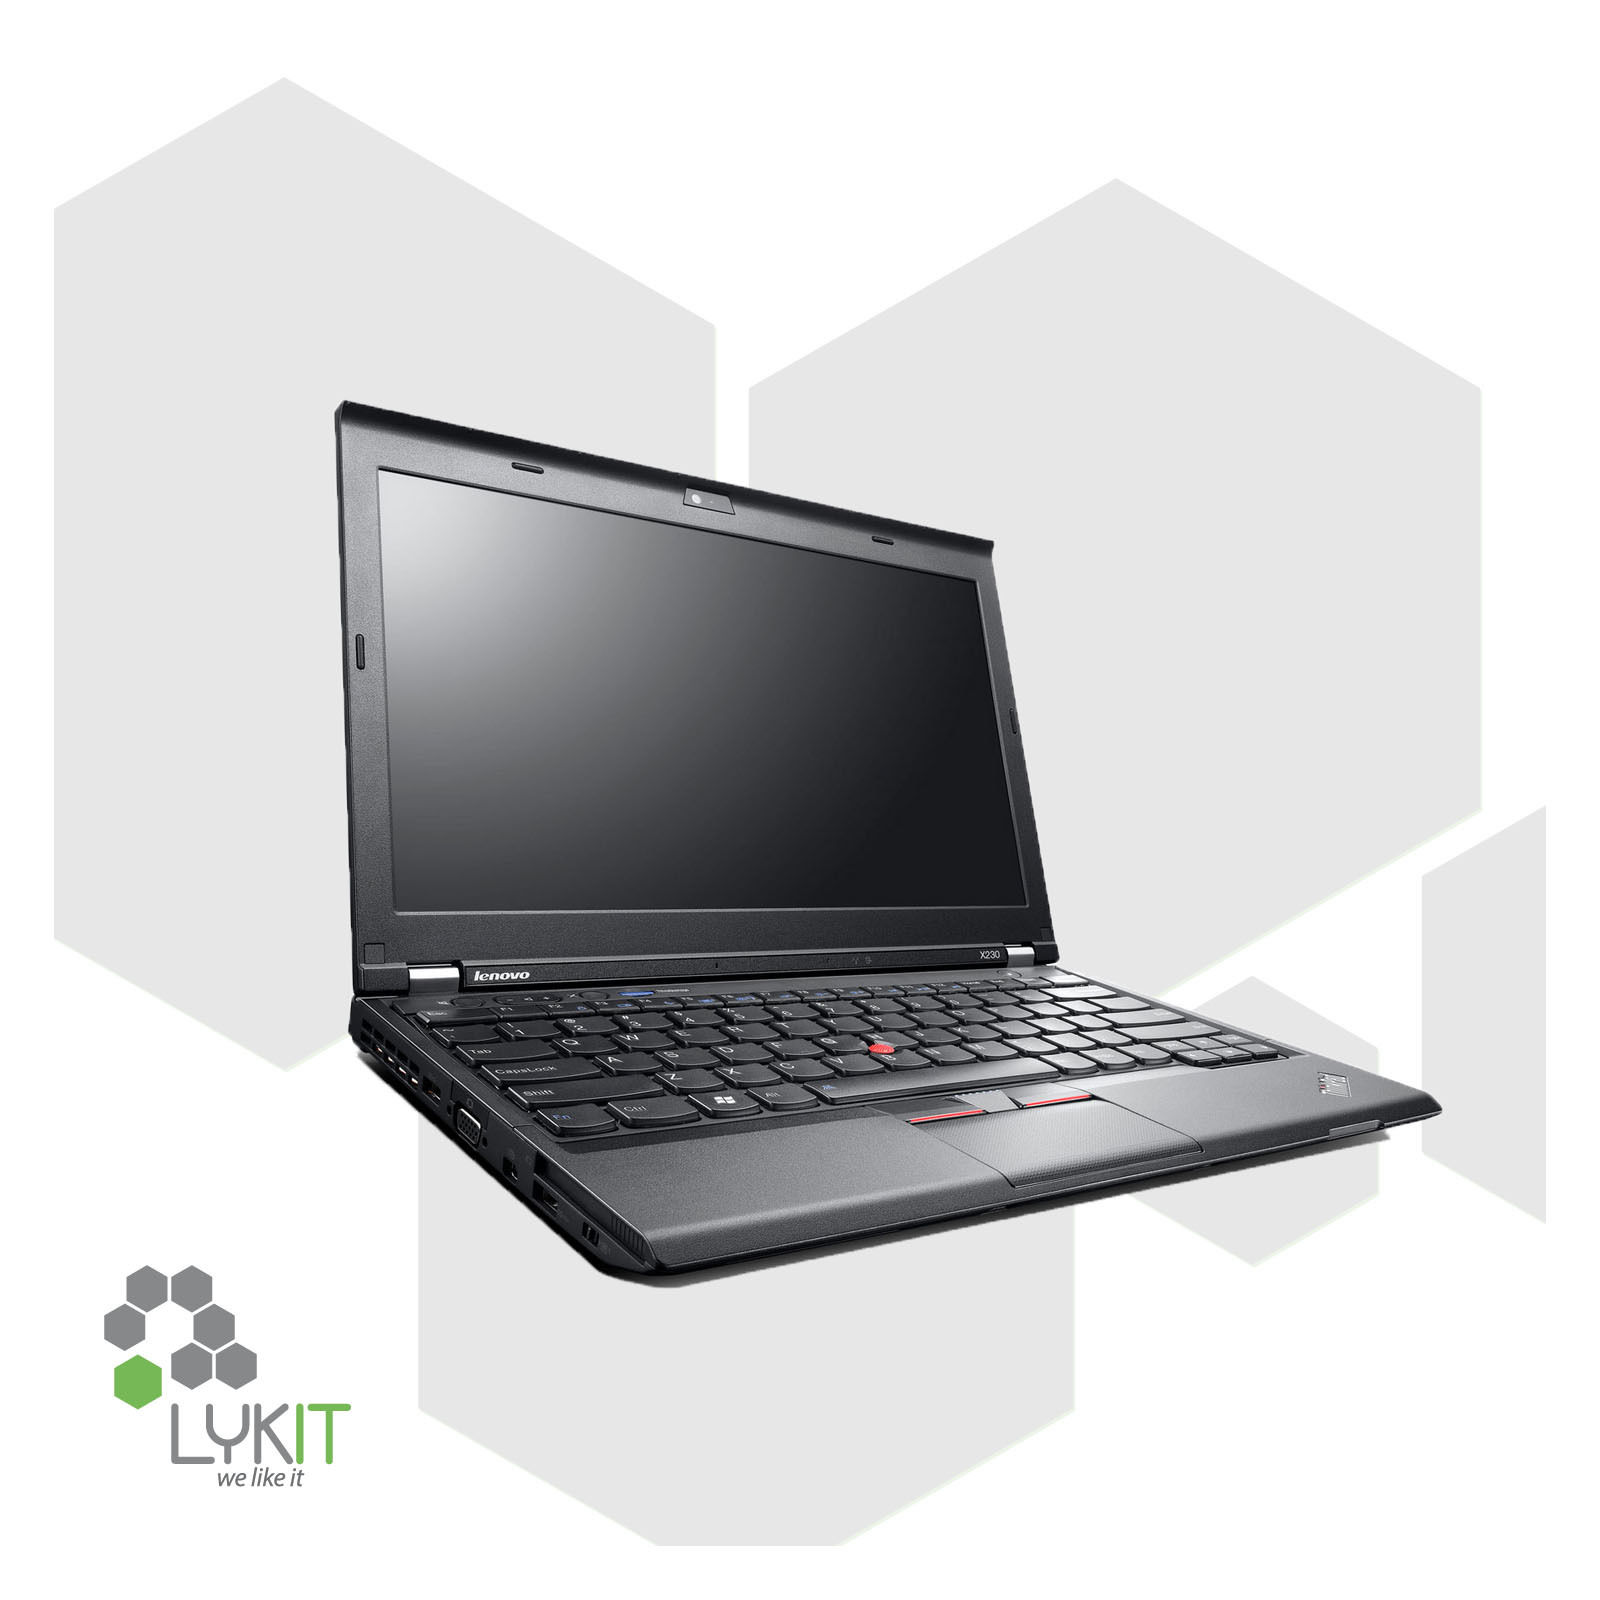 Lenovo ThinkPad X230 | i5 2,6 GHz | 4 GB Ram | 320 GB HDD | Win 7 Pro | Webcam